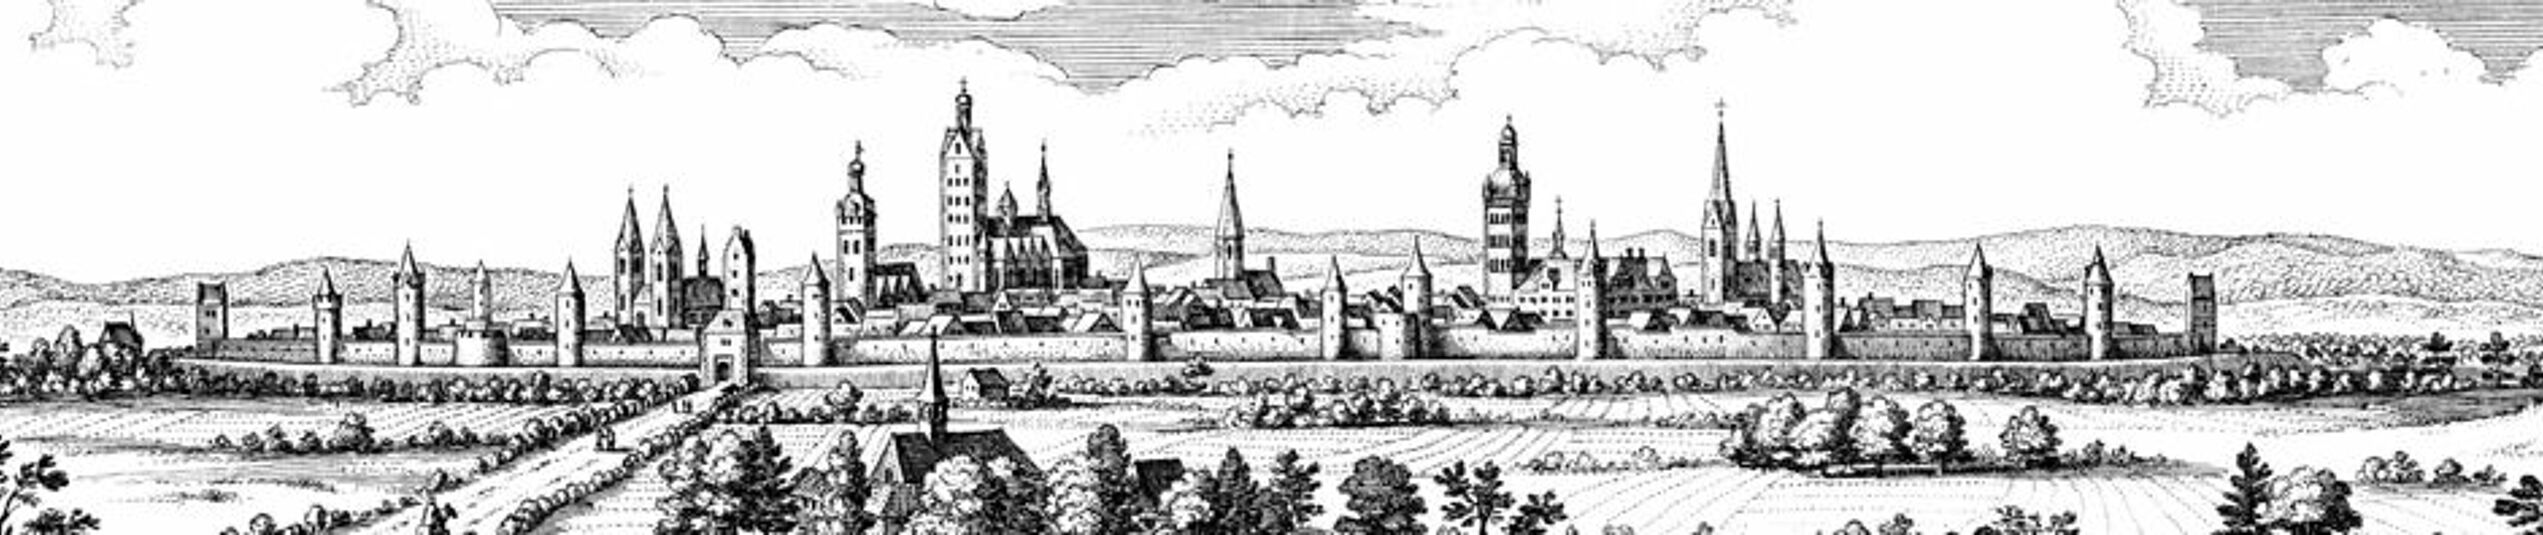 Kupferstich der Stadtansicht Paderborns von Matthäus Merian. Veröffentlicht in "Topographia Germaniae" Band "Topographia Westphaliae" von 1647.